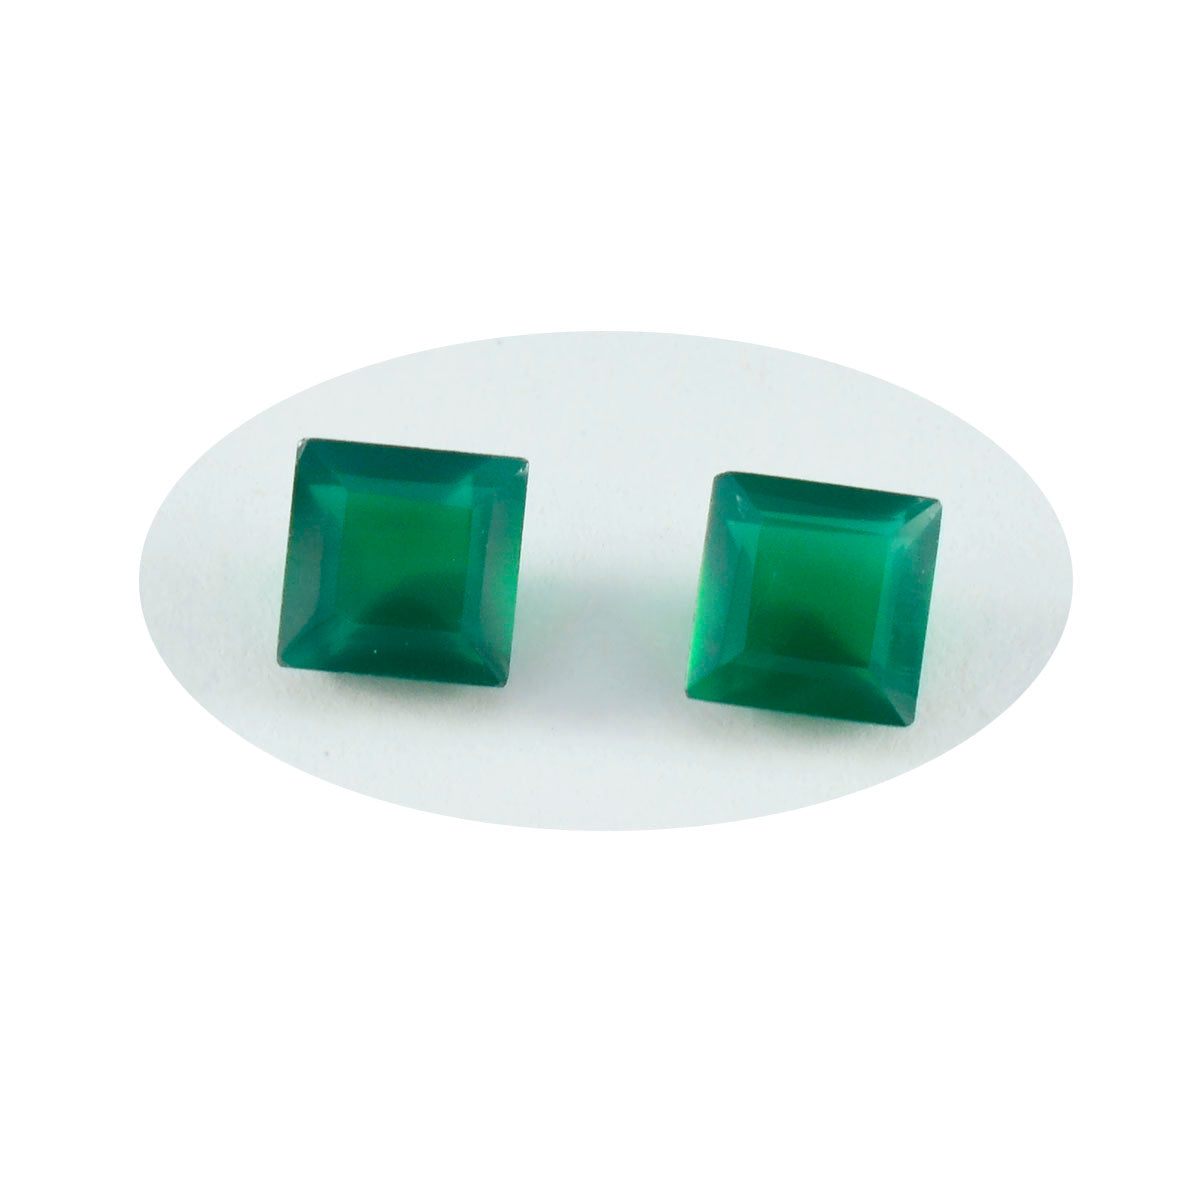 riyogems 1 шт. натуральный зеленый оникс ограненный 9x9 мм квадратной формы драгоценный камень удивительного качества